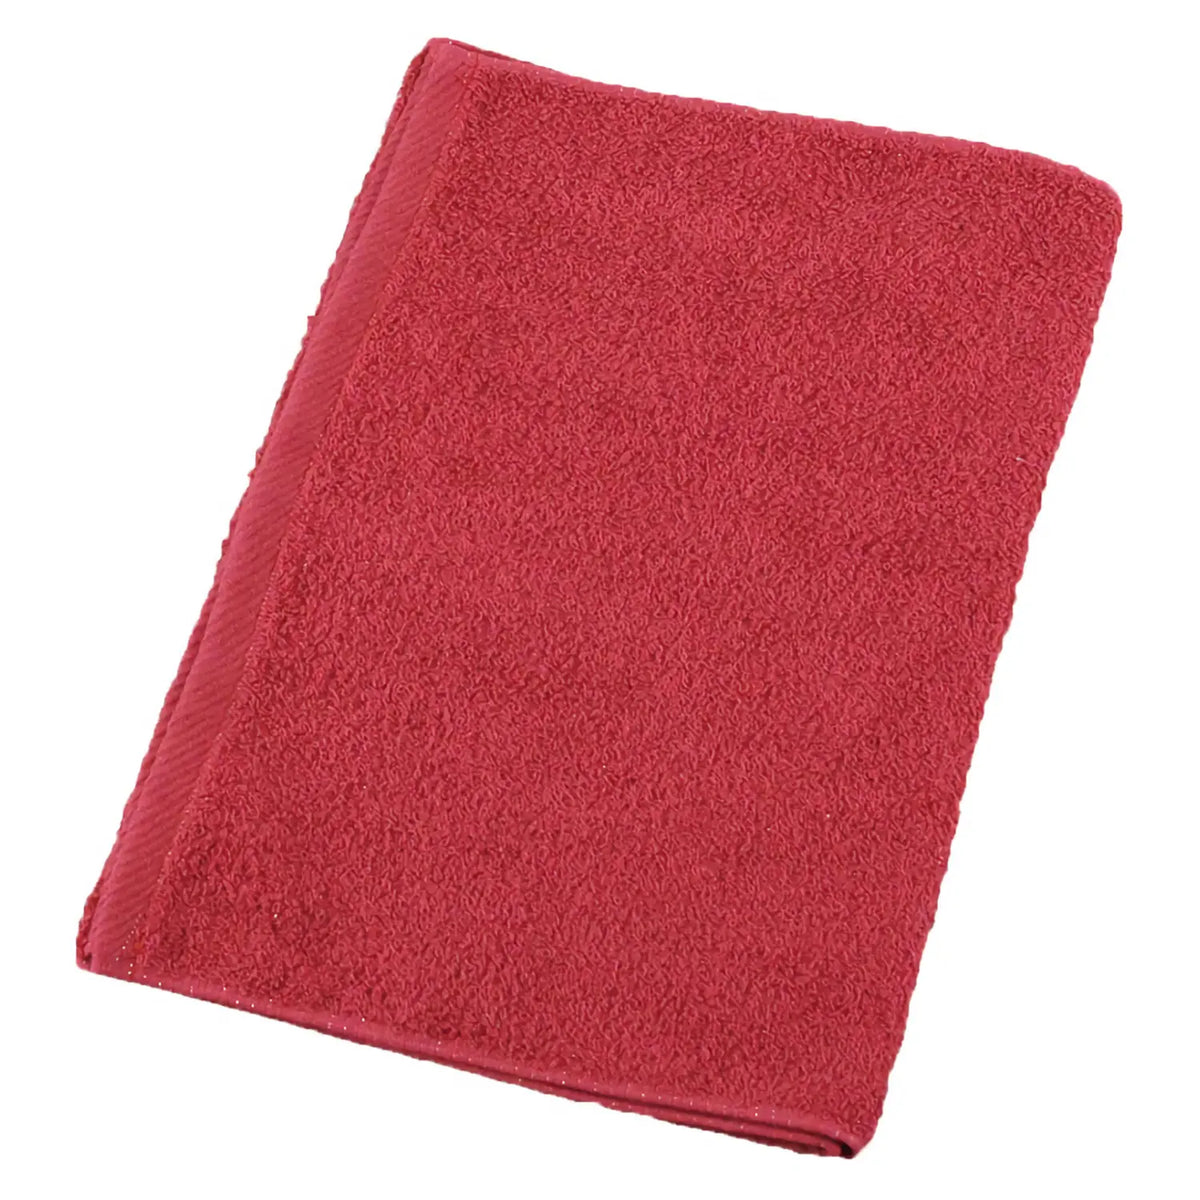 μ-func. Cotton Antibacterial Face Towel 340x850mm 12 pcs